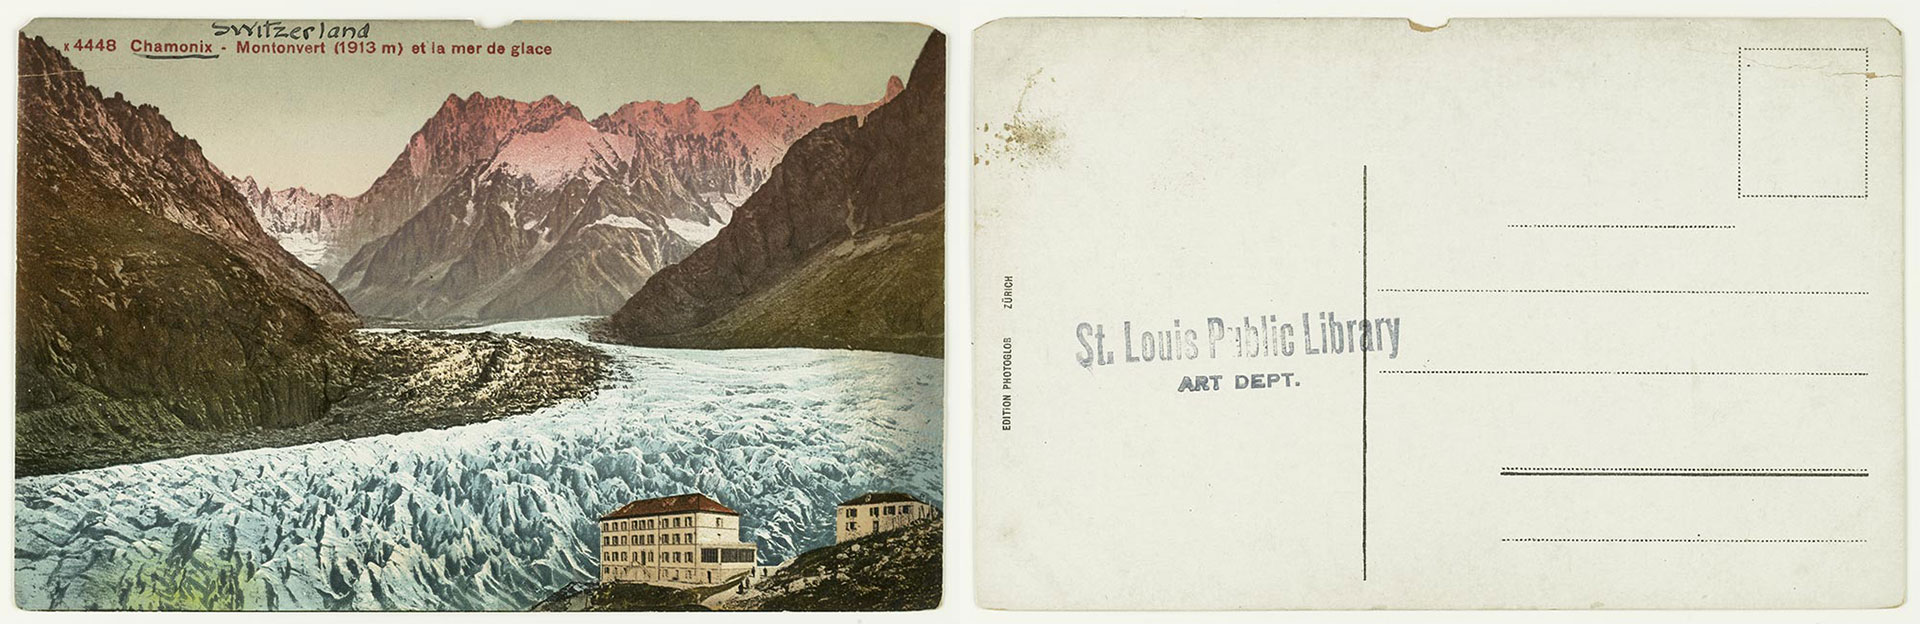 Chamonix - Montonvert (1913 m) et al mer de glace